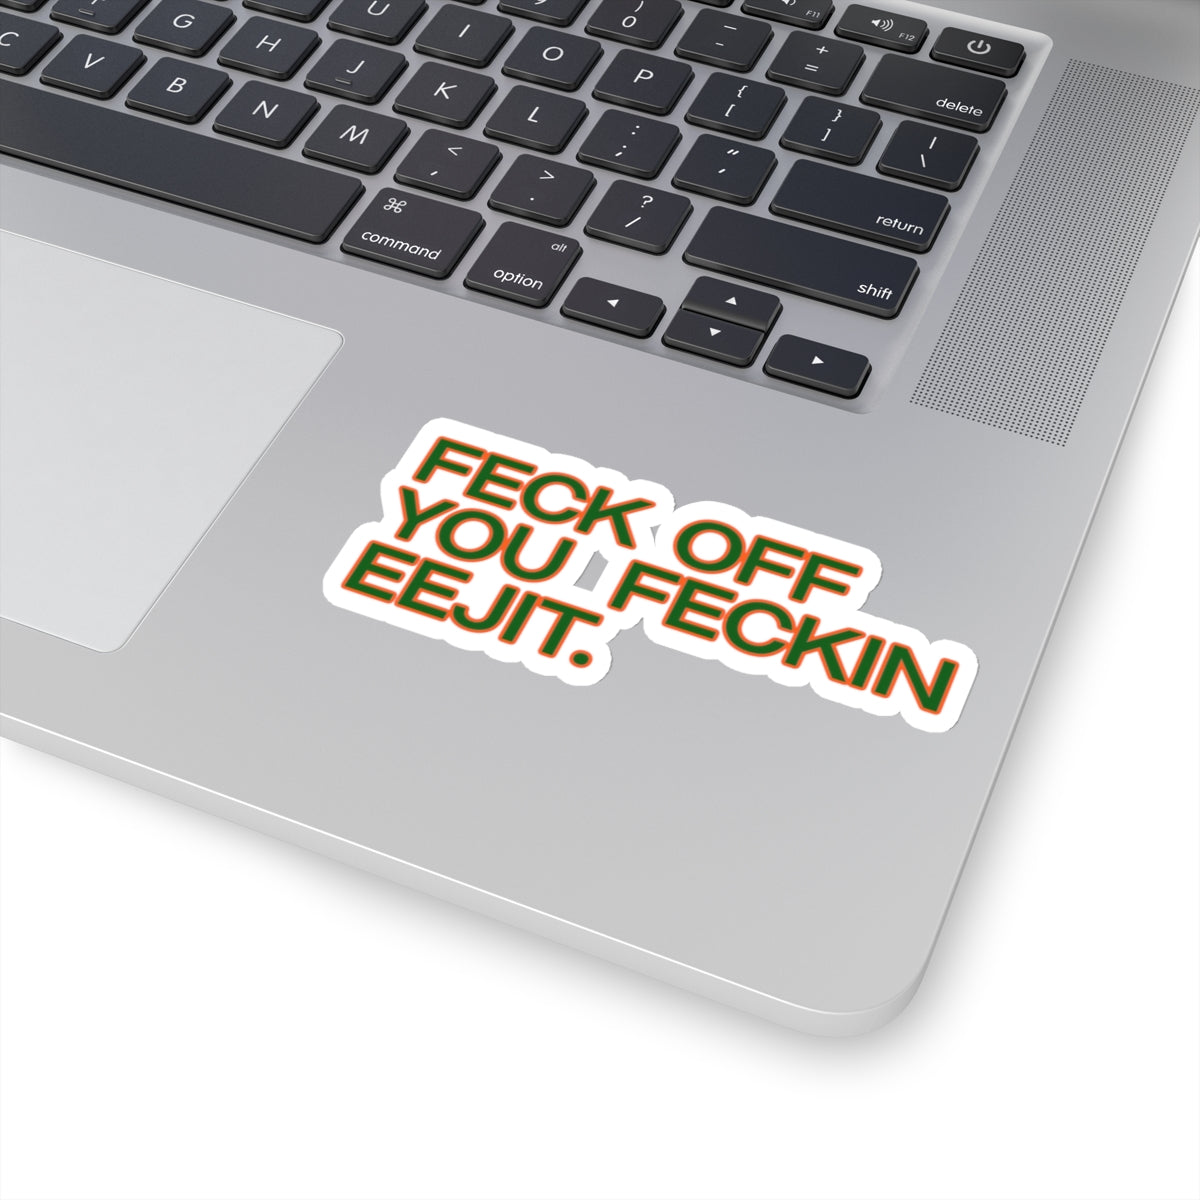 Feck Off You Feckin Edjit Sticker